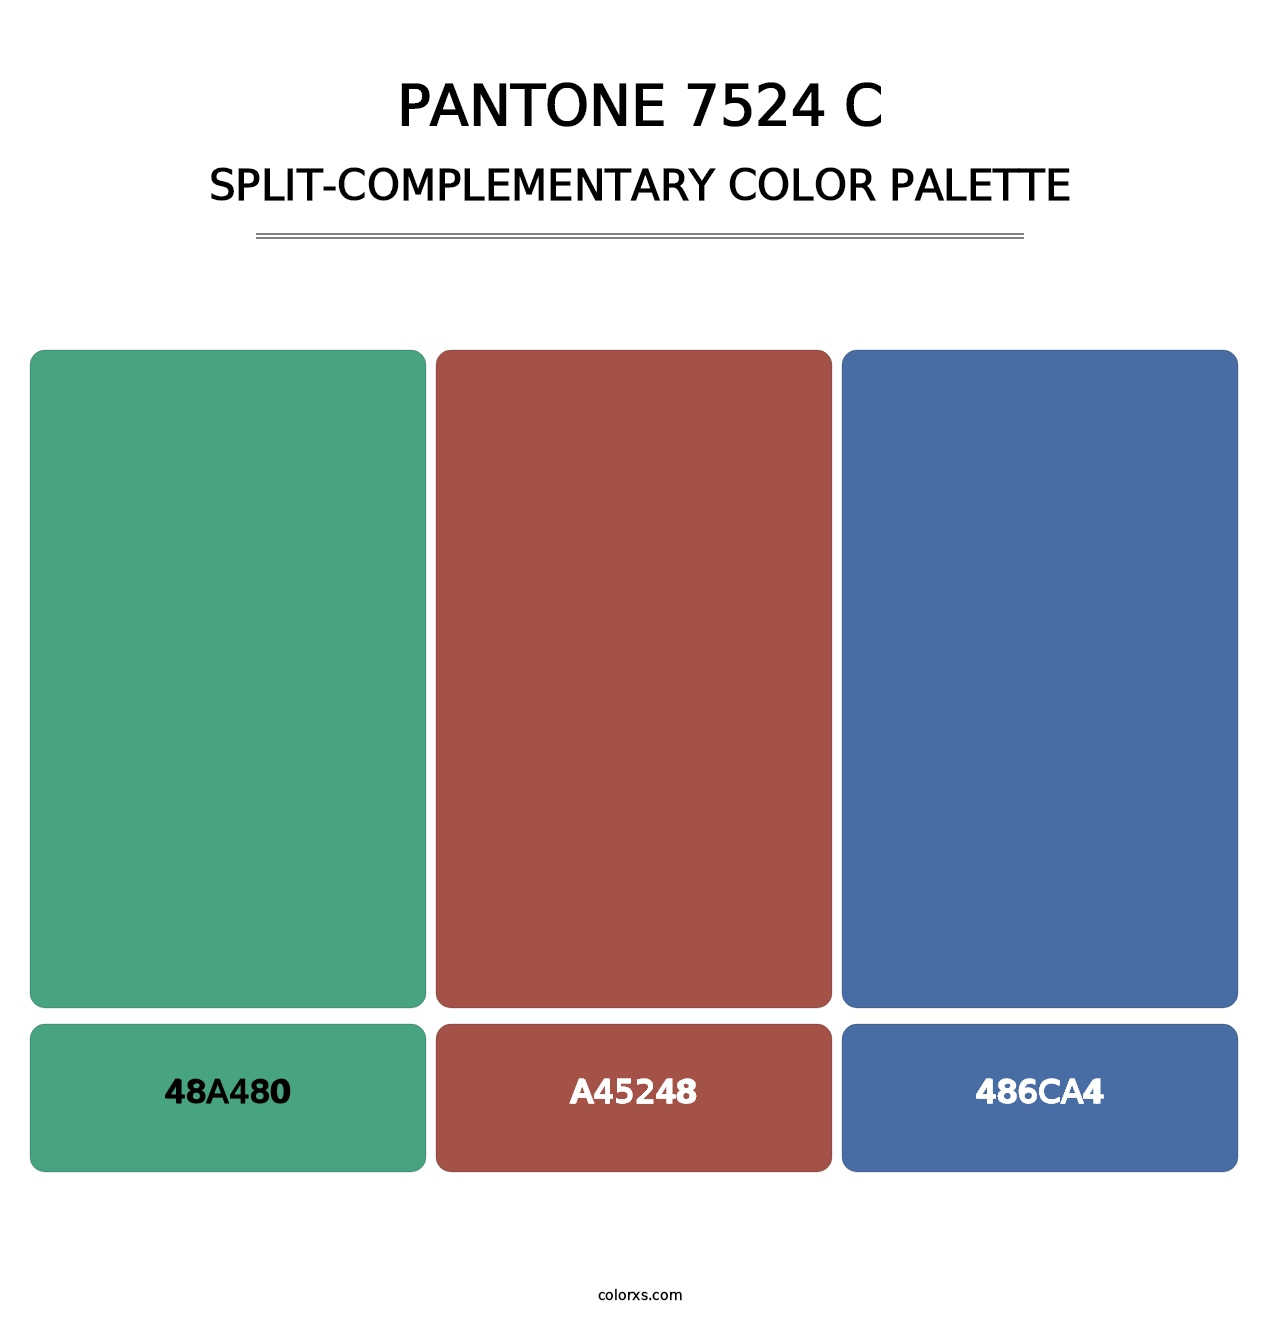 PANTONE 7524 C - Split-Complementary Color Palette